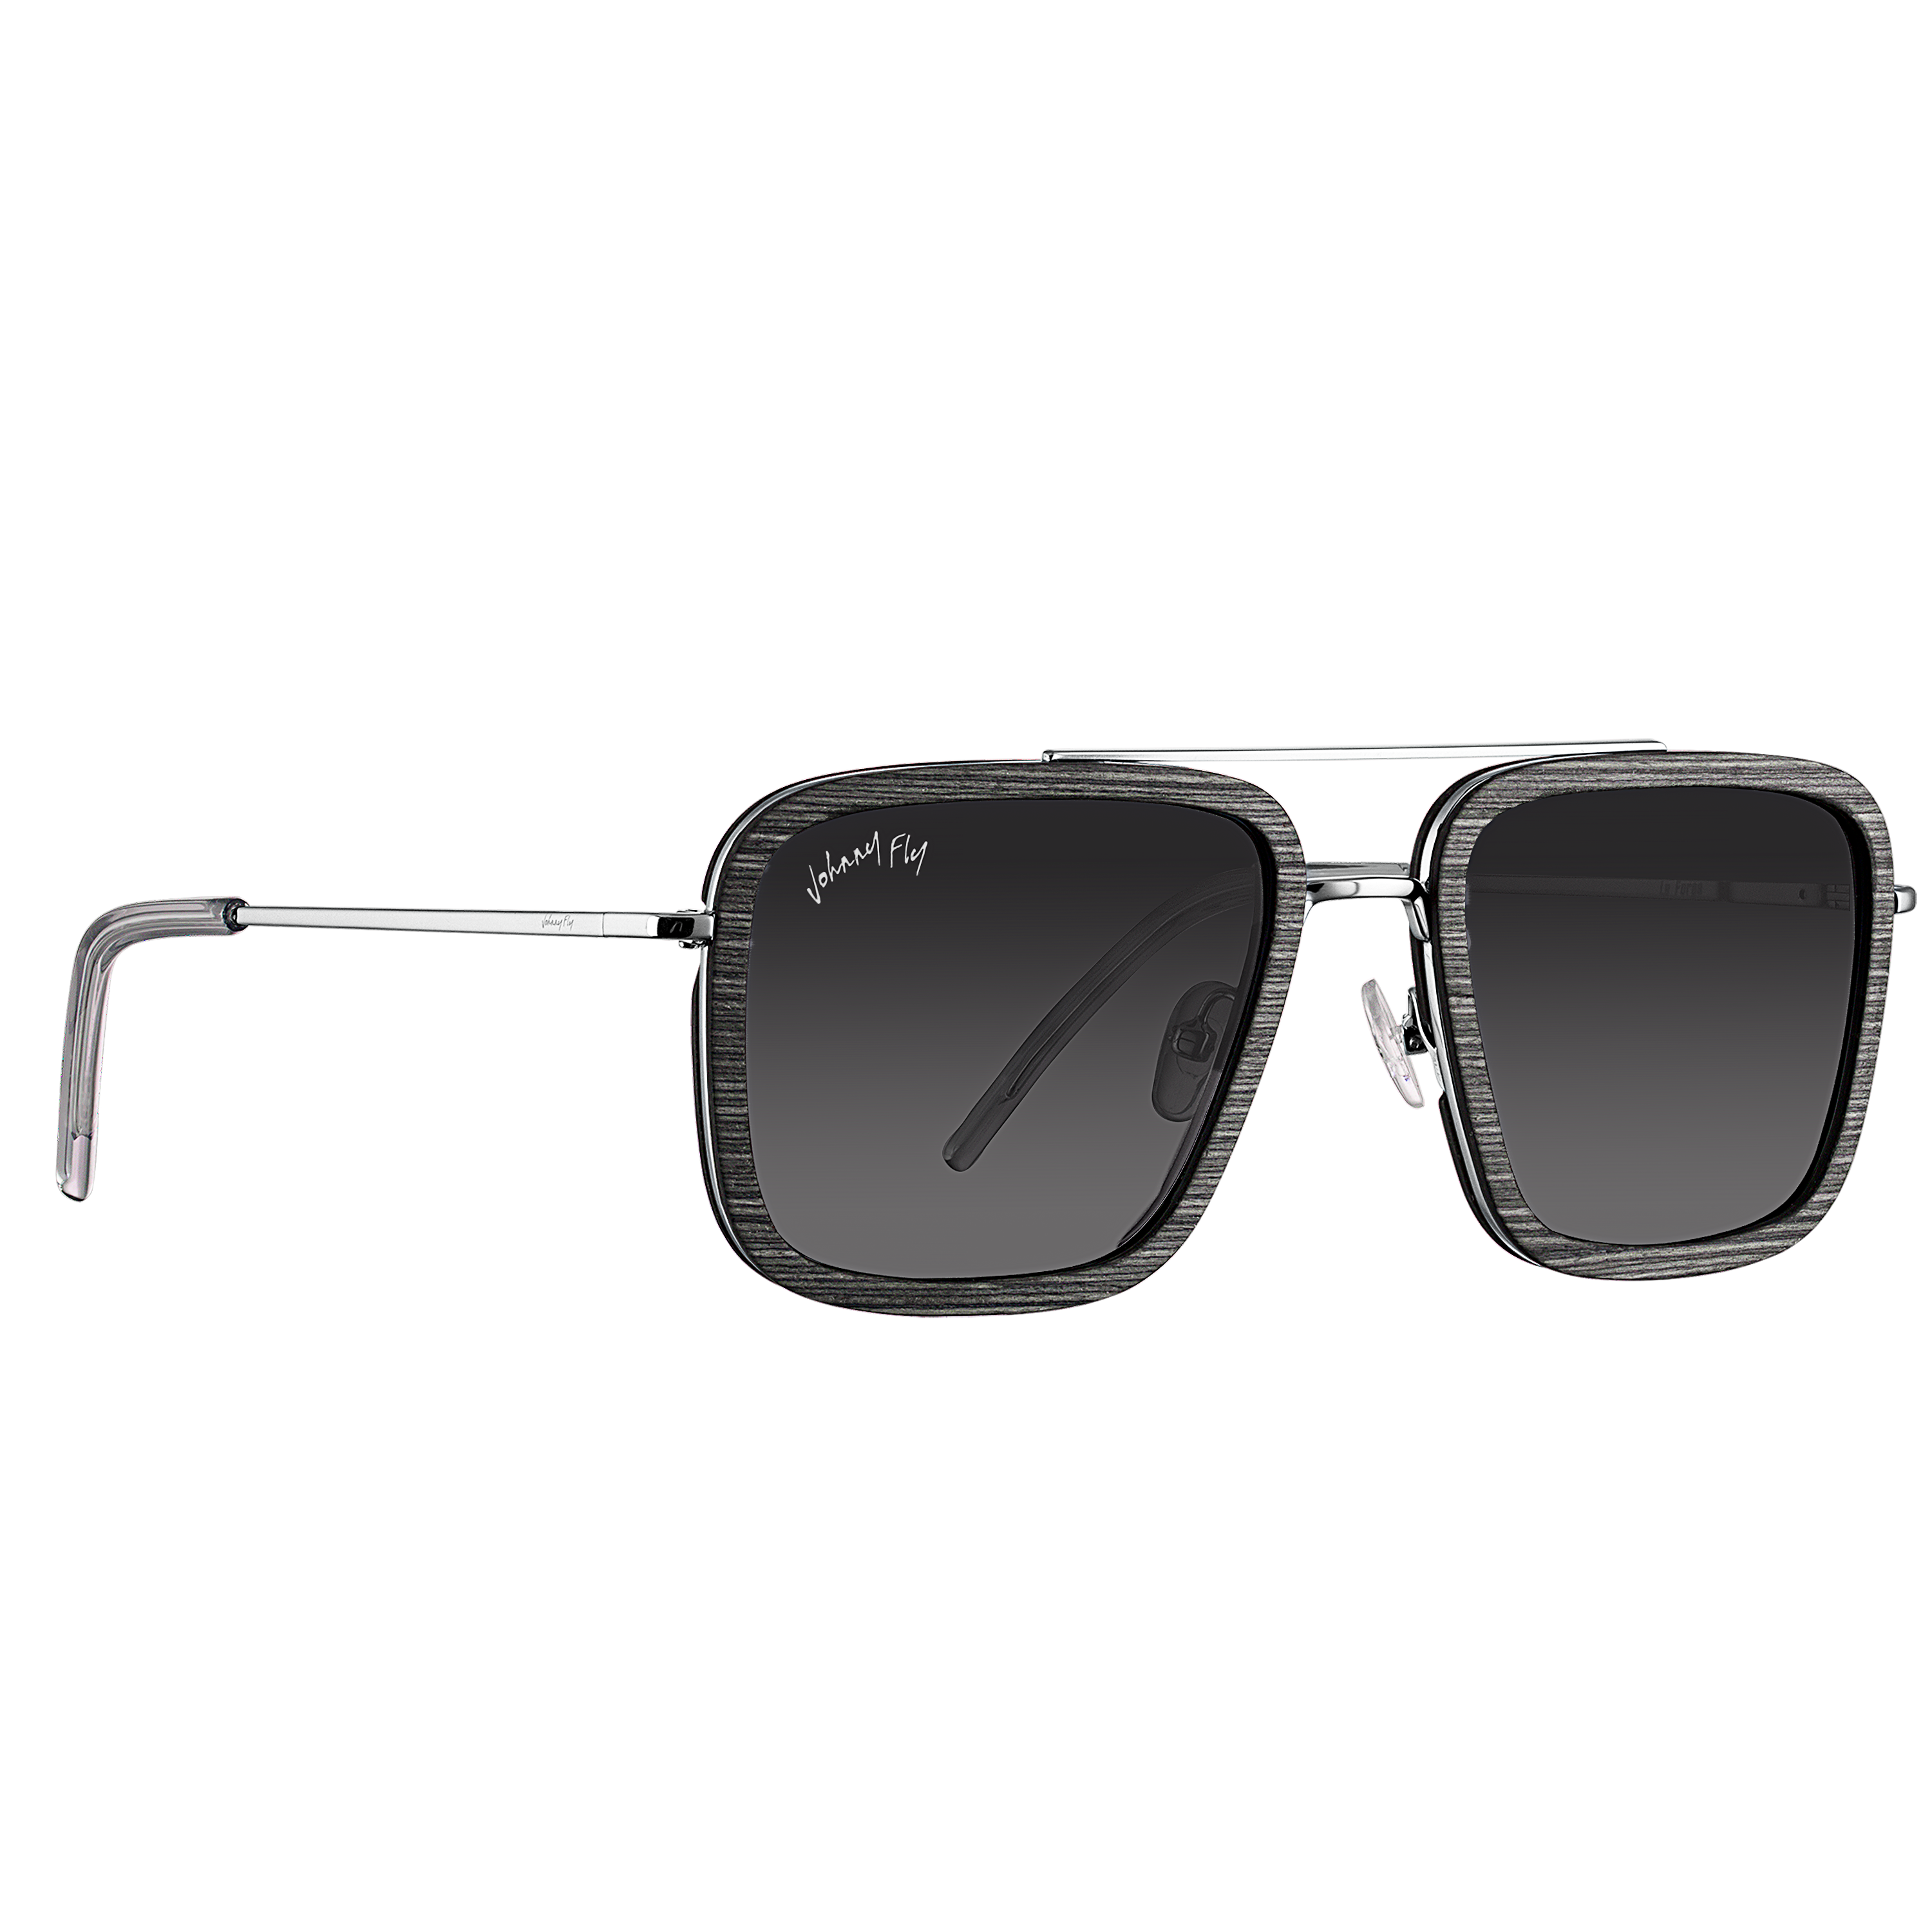 LAFORGE - Polished Nickel - Sunglasses - Johnny Fly Eyewear | 